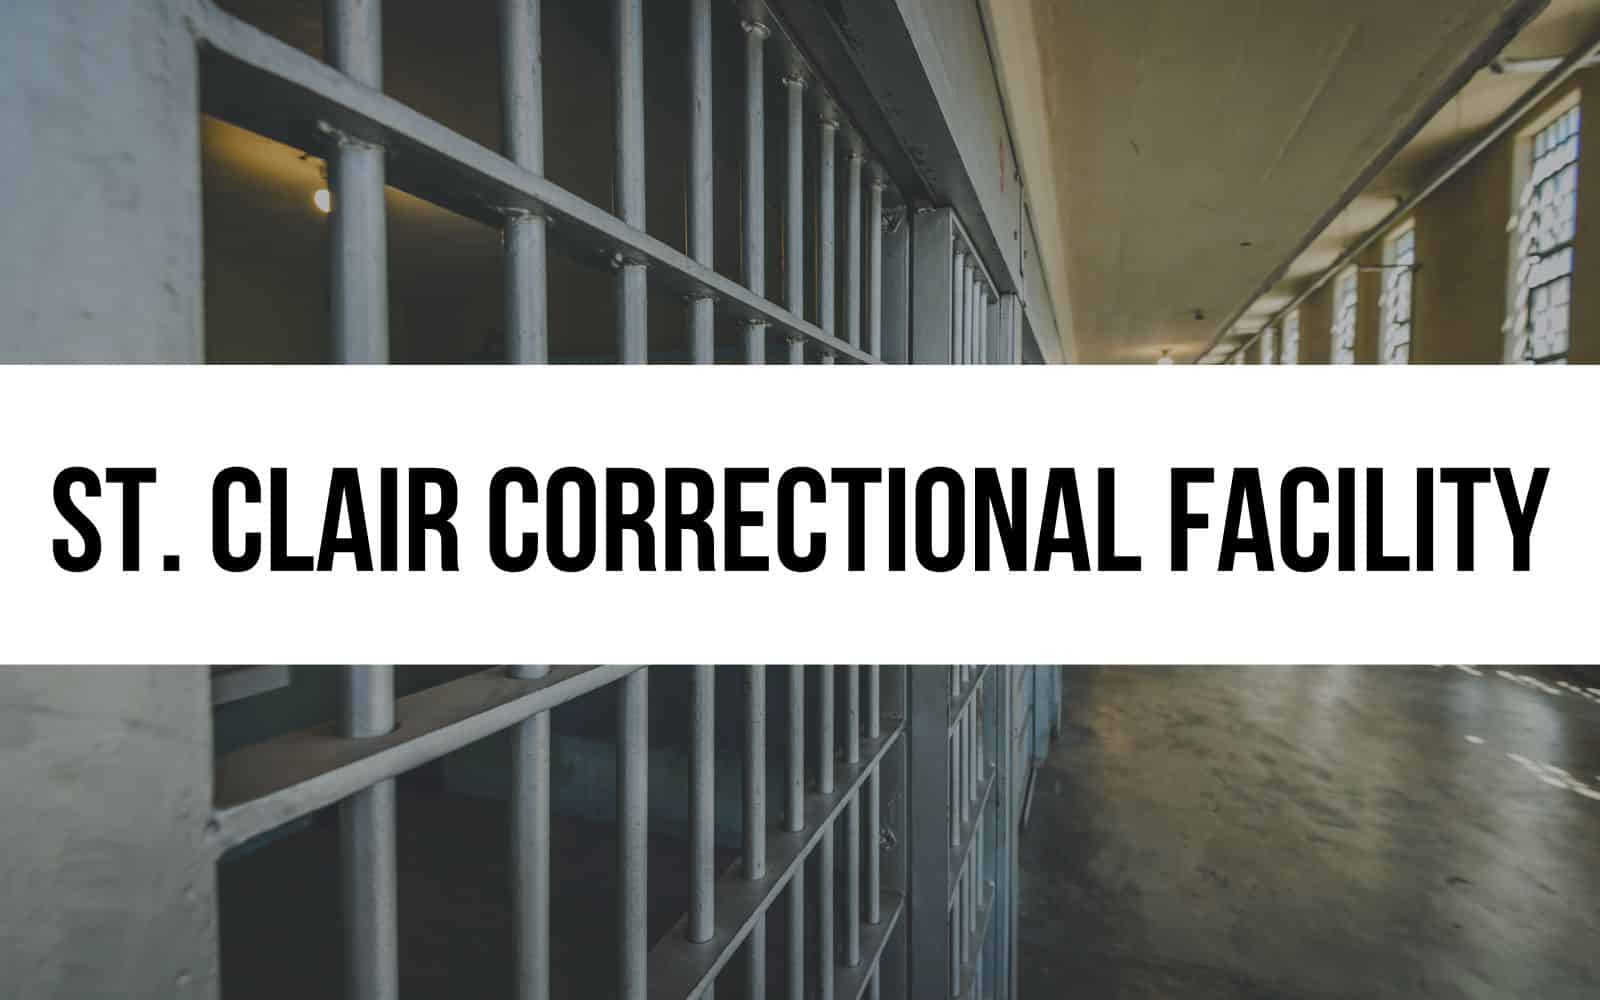 St. Clair Correctional Facility